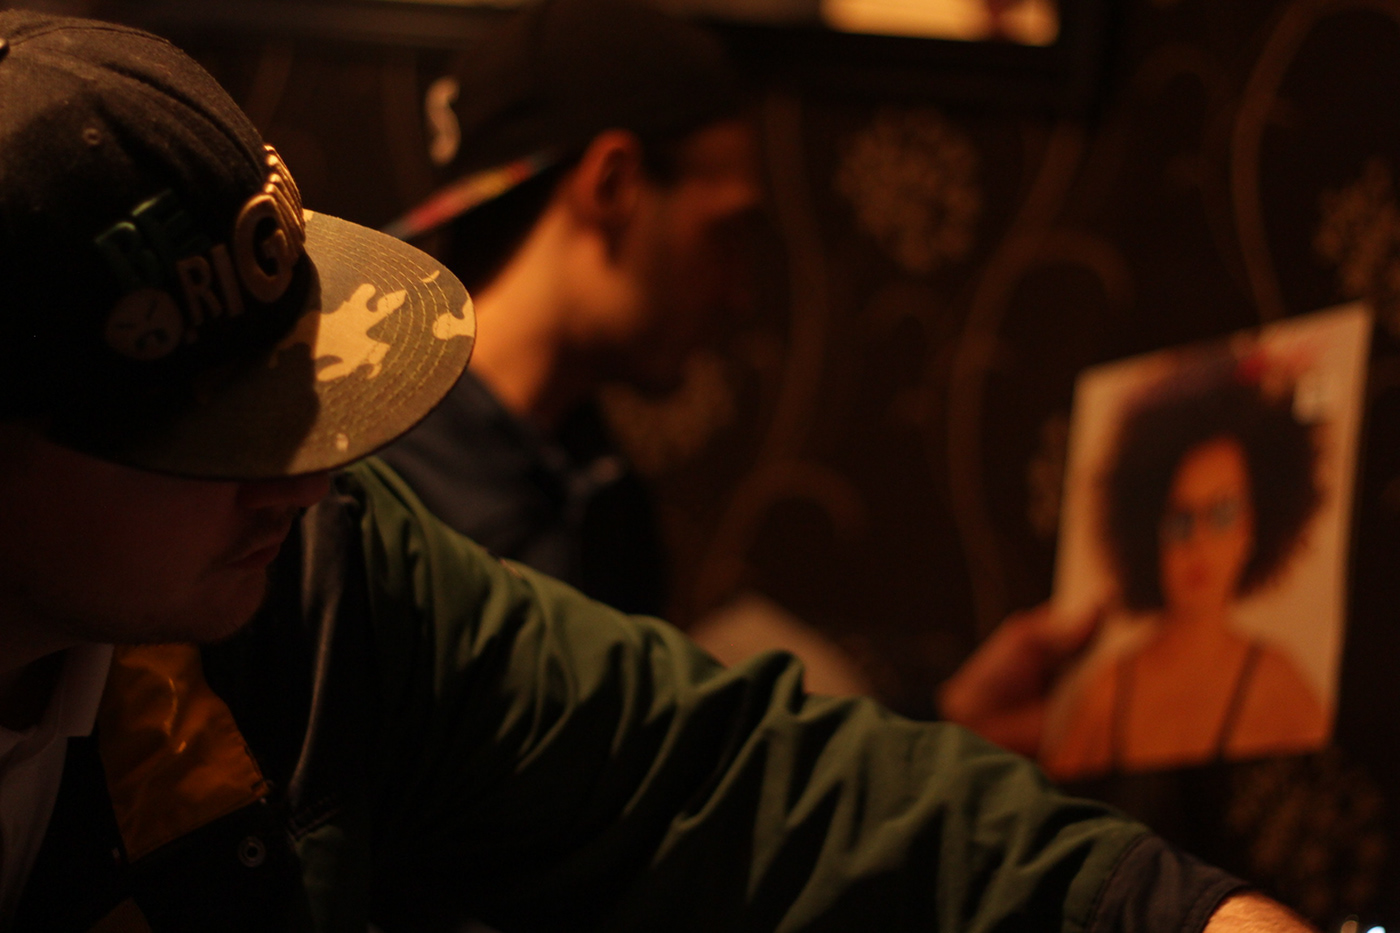 dj hip-hop hiphop mpc producer rap rapper Rappers streetwear studio